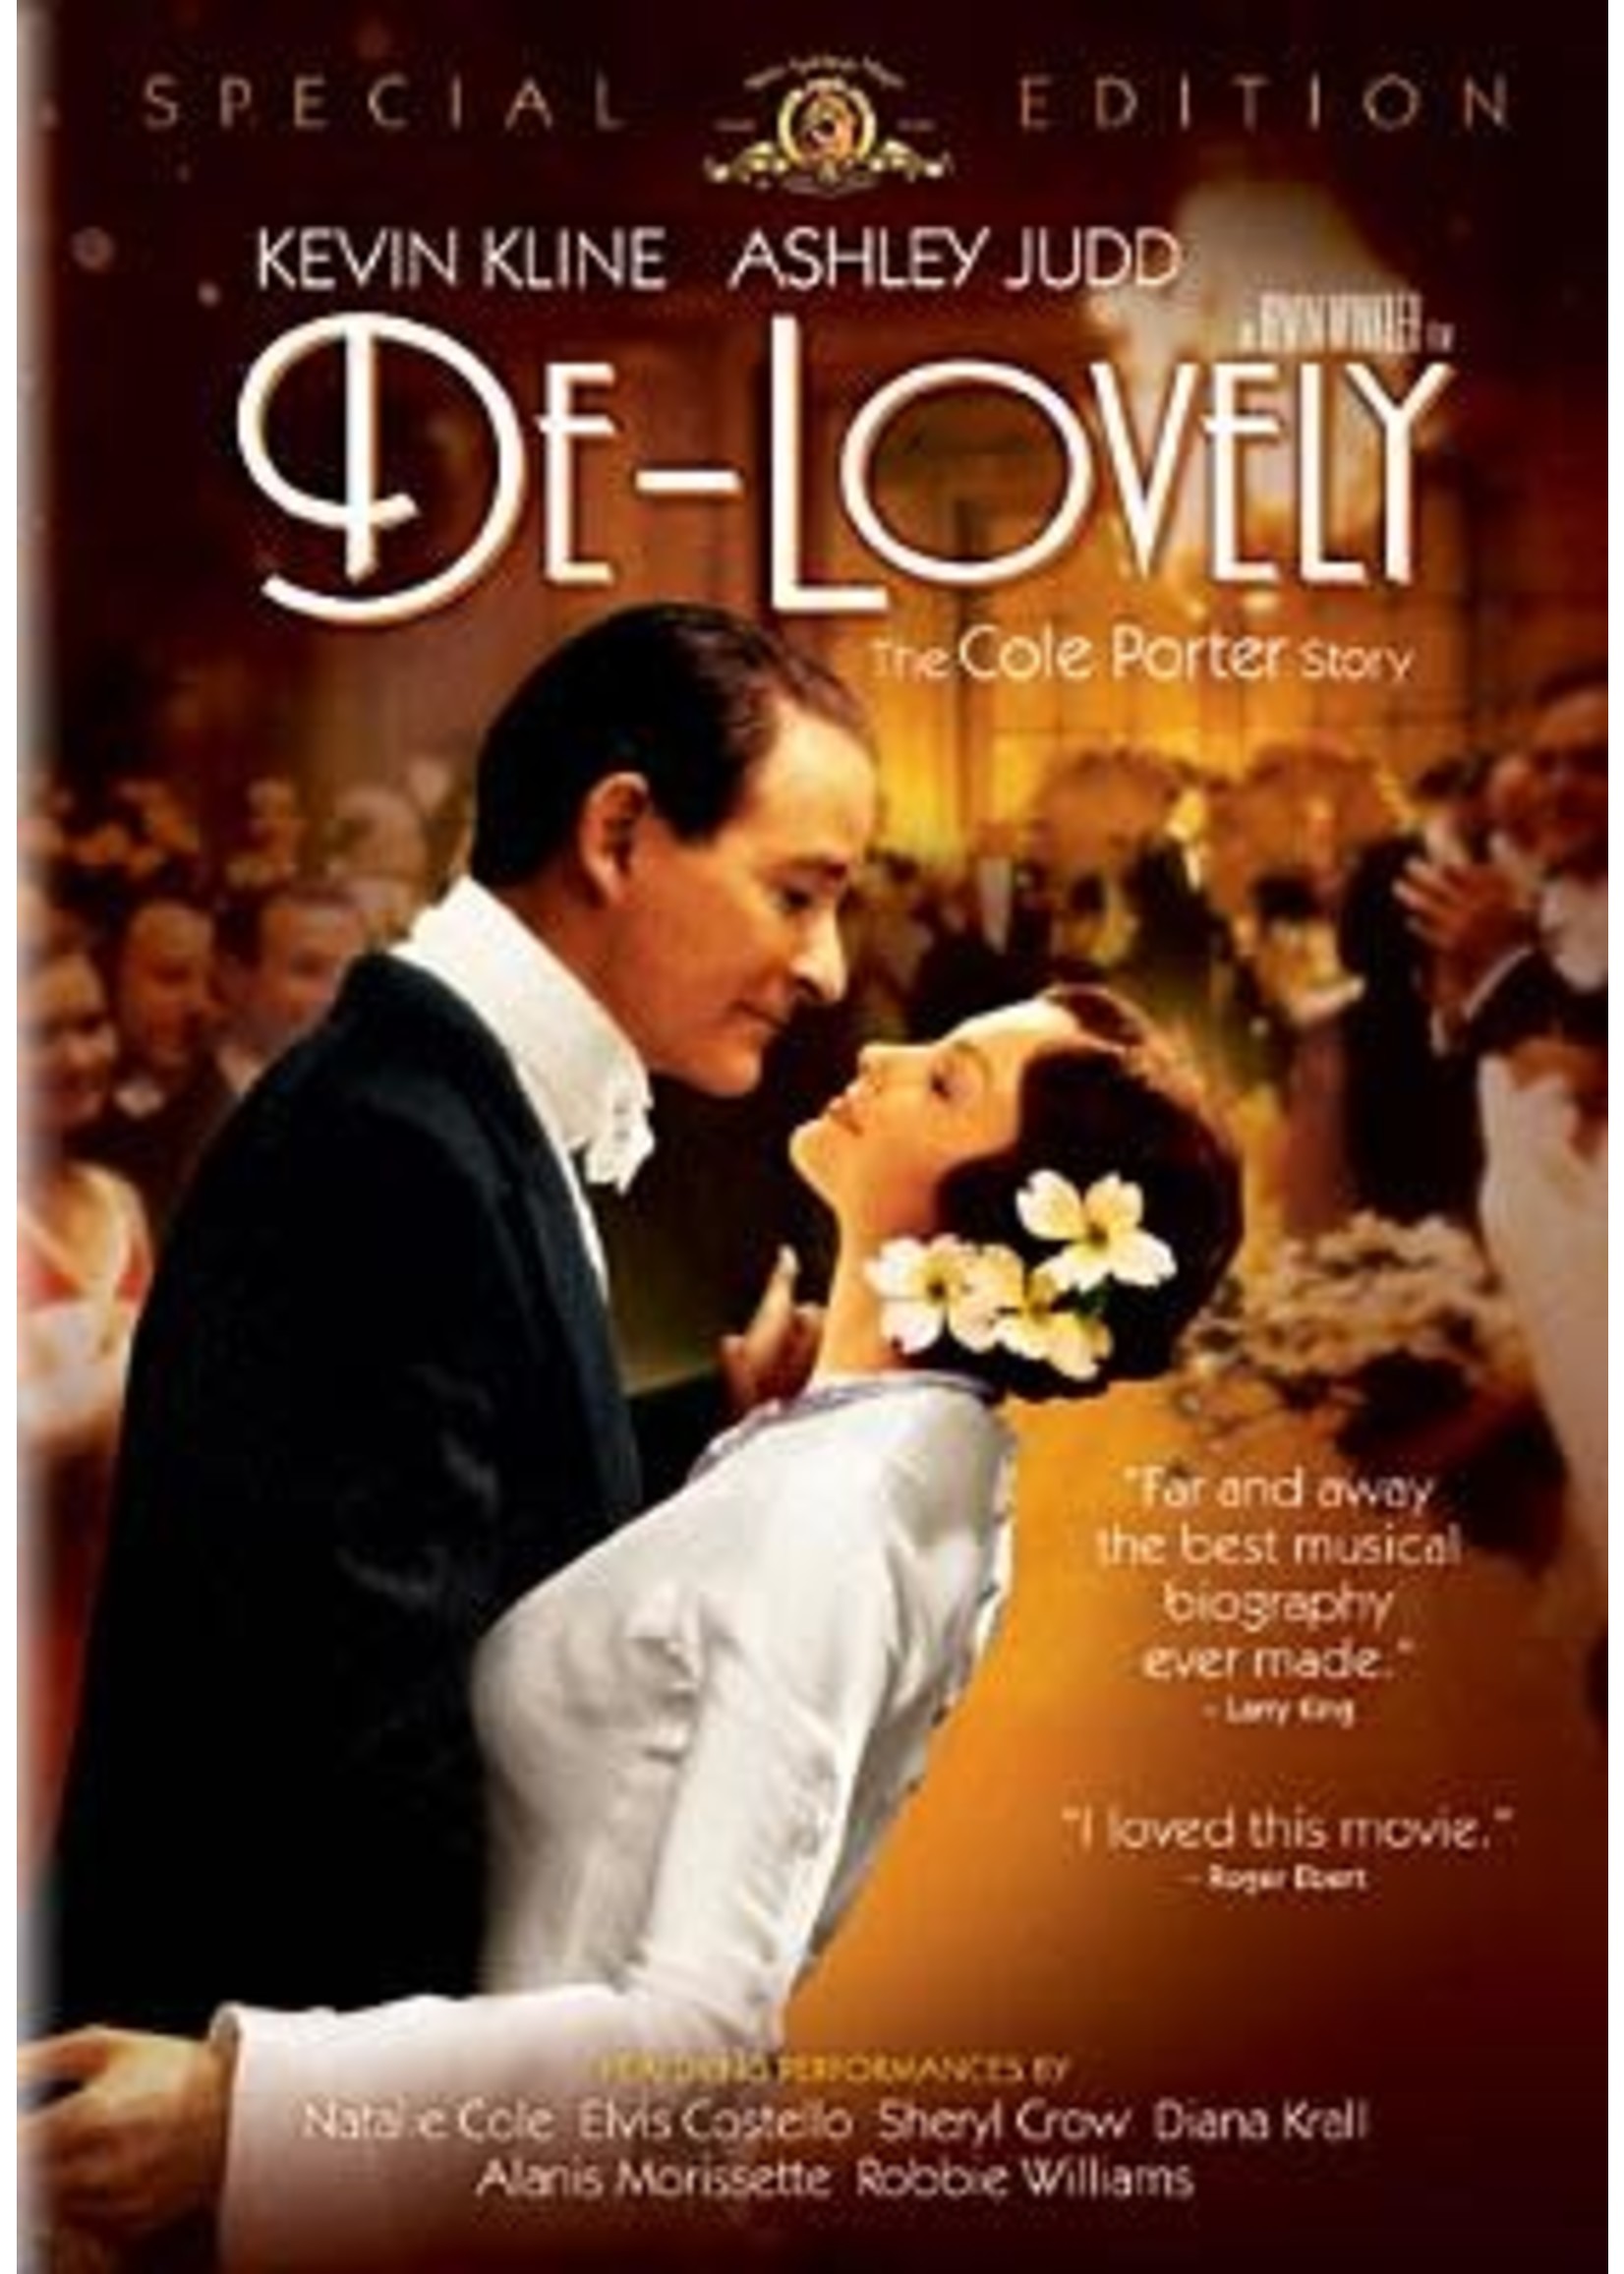 De-Lovely (DVD)